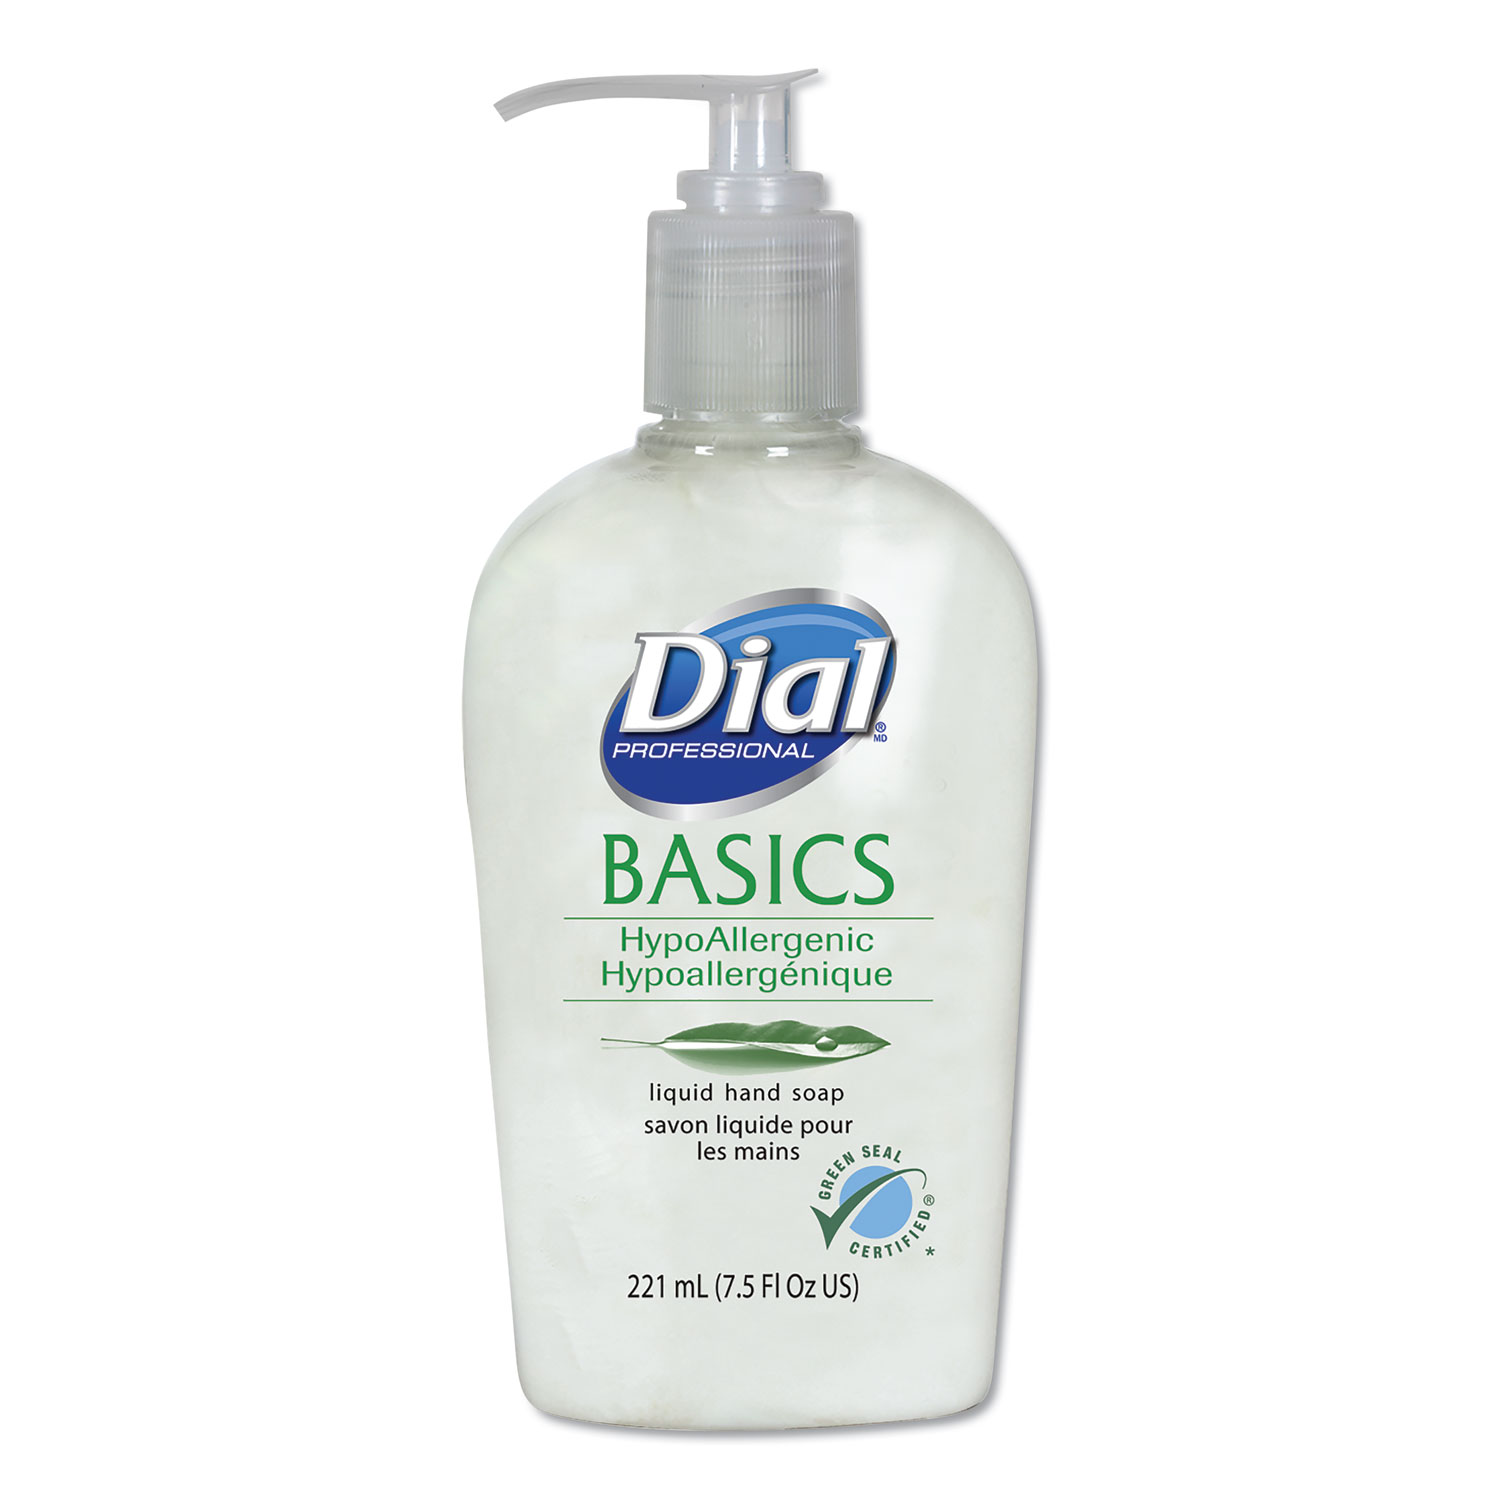  Dial Professional DIA06028 Basics Liquid Hand Soap, 7.5 oz, Fresh Floral (DIA06028) 